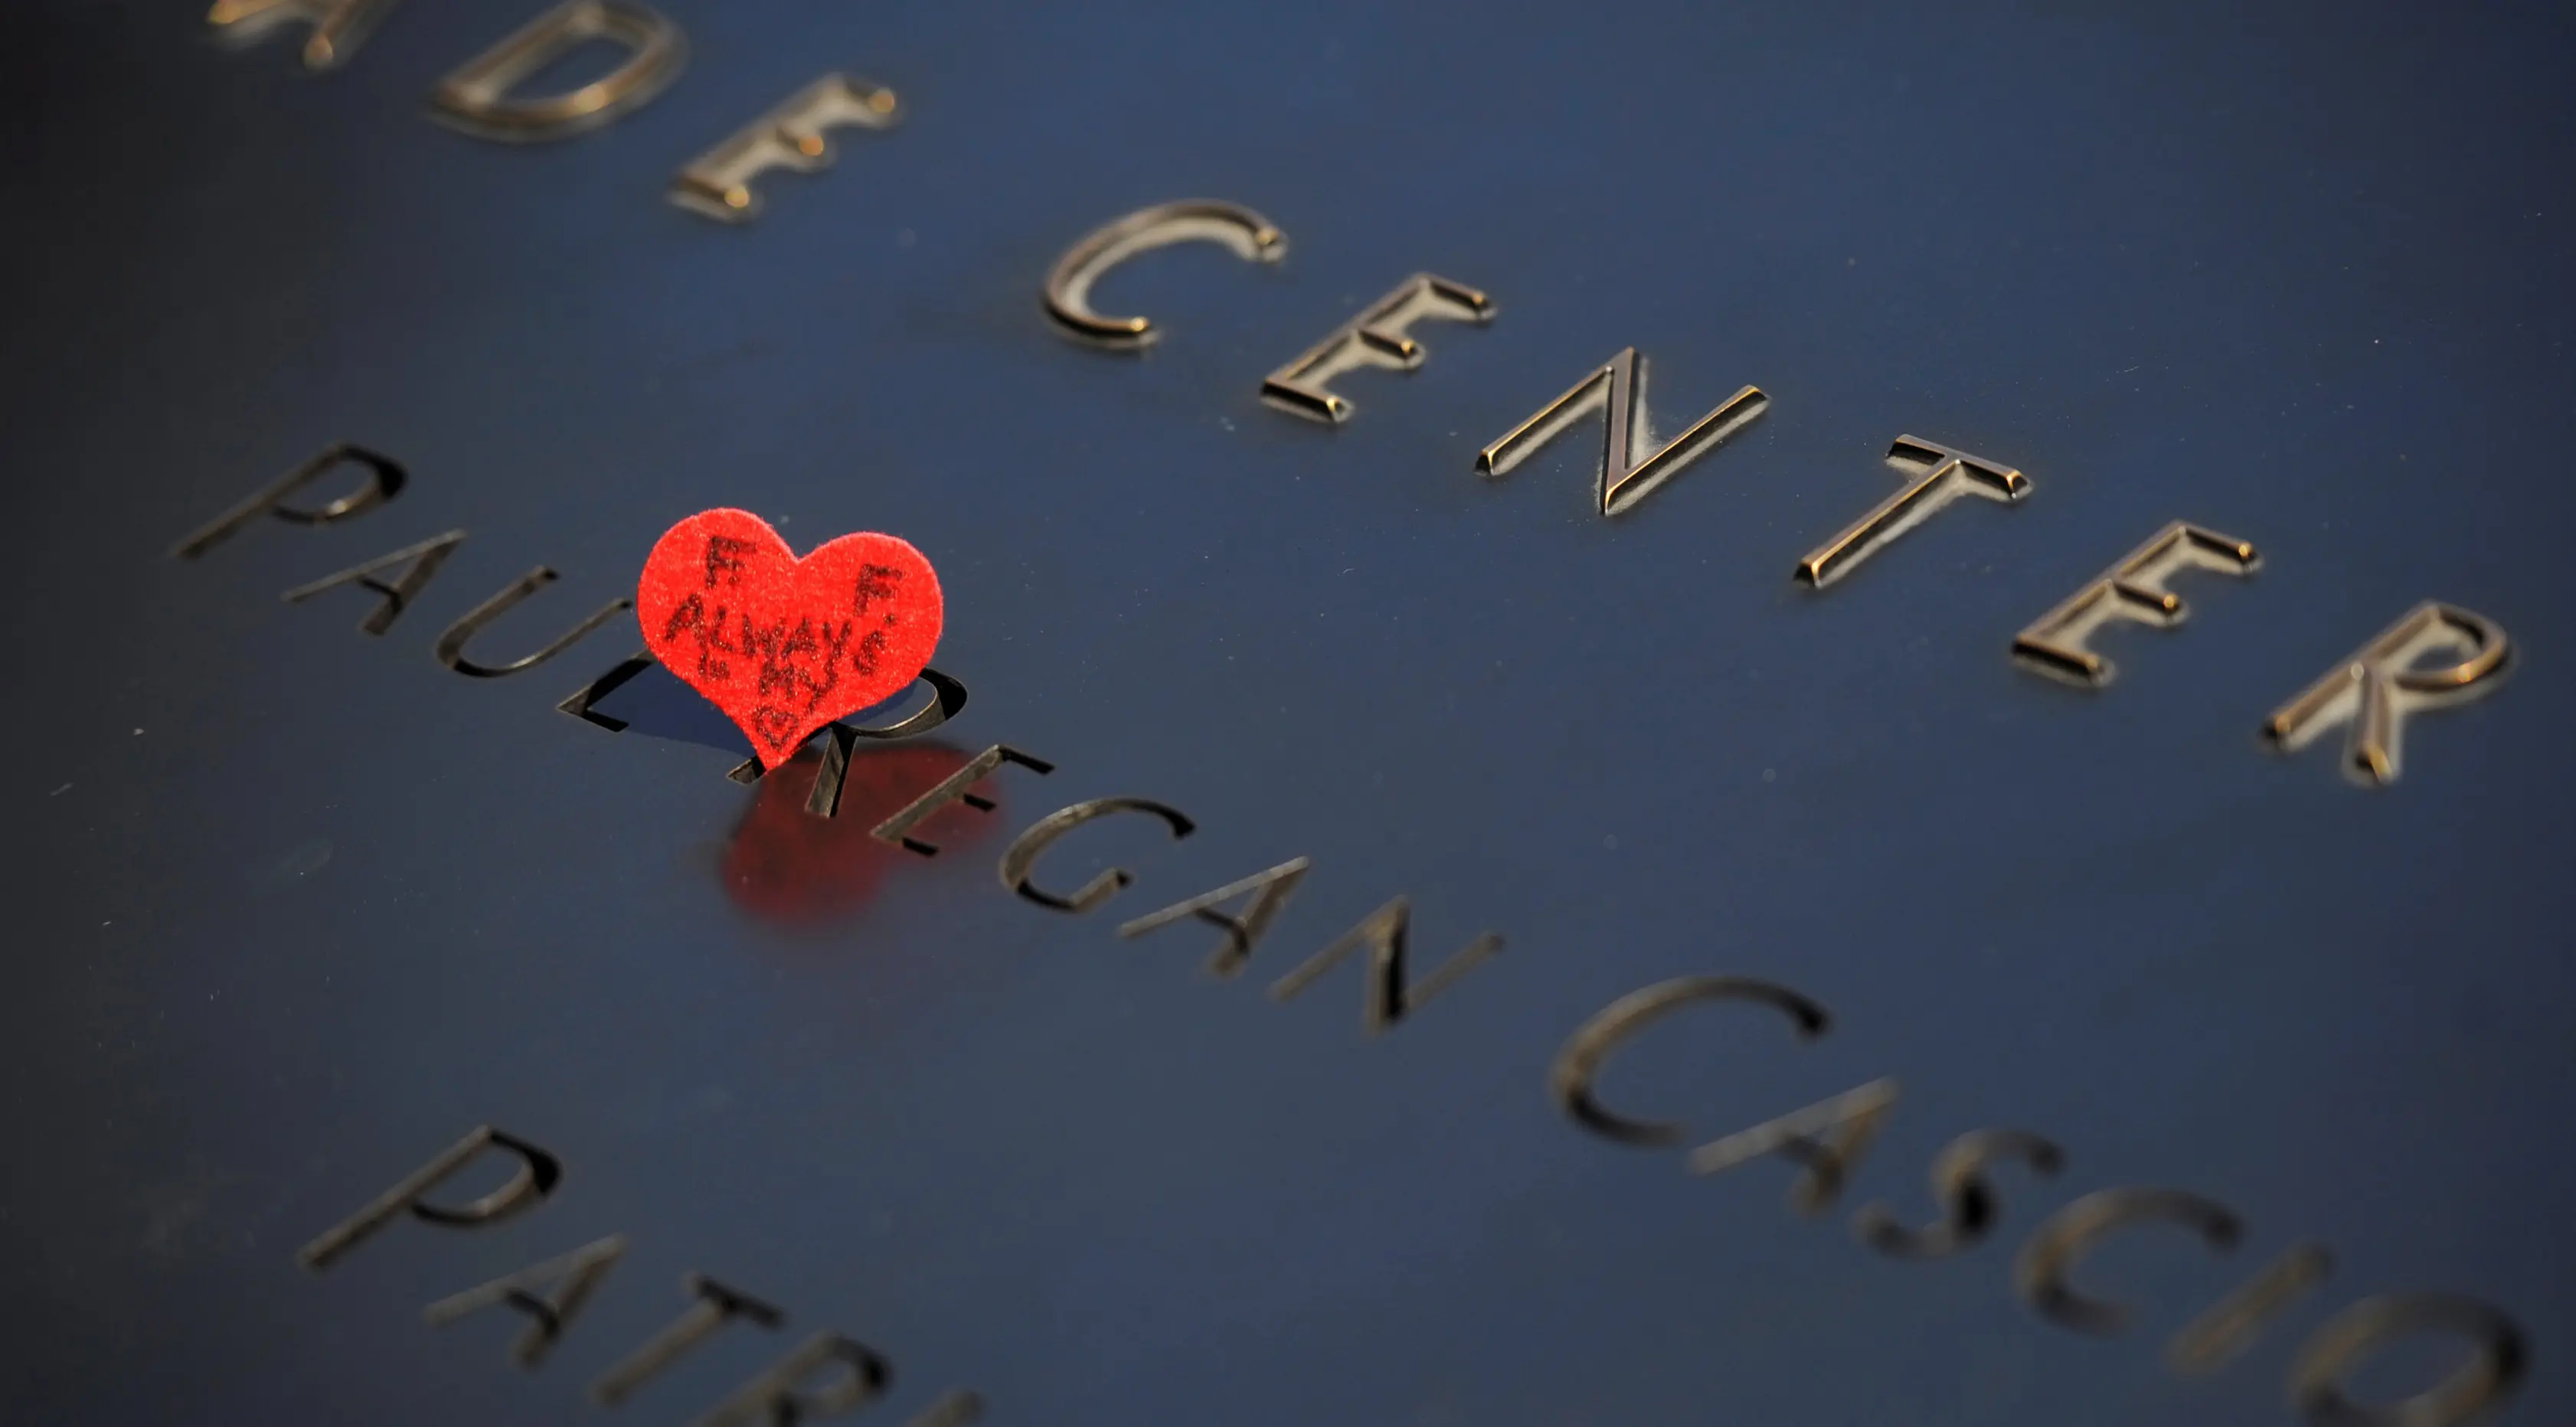 Sebuah catatan kecil ditinggalkan di situs nama-nama para korban peristiwa serangan 11 September 2001 lalu di National September 11 Memorial and Museum at the World Trade Center, New York, Amerika Serikat, Sabtu (10/9). (REUTERS/Mark Kauzlarich)